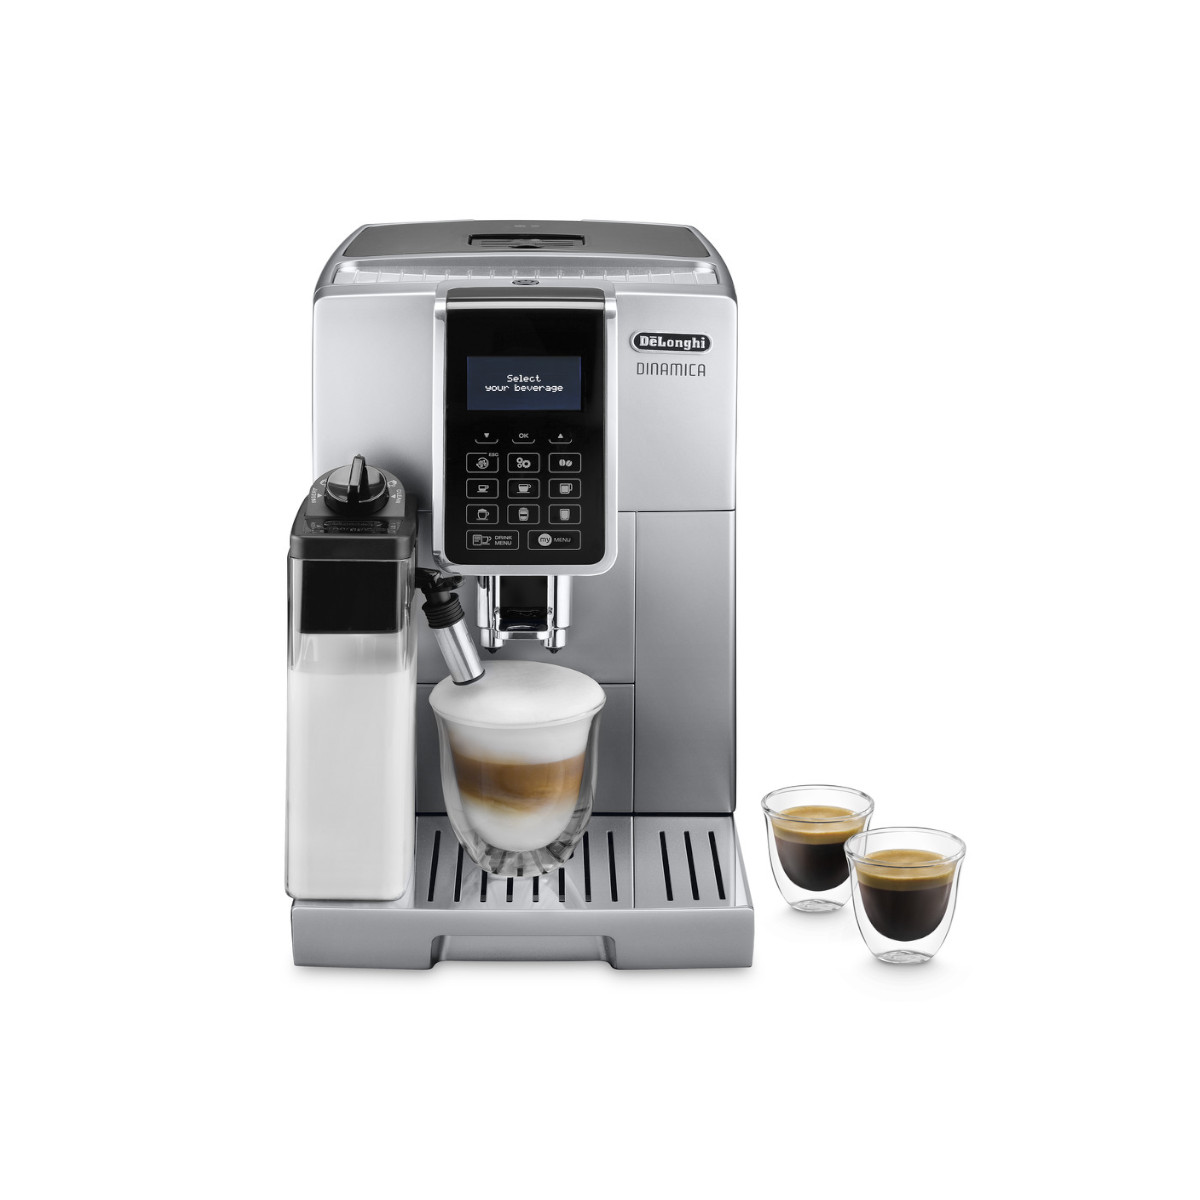 Автоматическая кофемашина DeLonghi Dinamica ECAM350.75.S, серебристый автоматическая кофемашина delonghi dinamica plus d9t серебряный